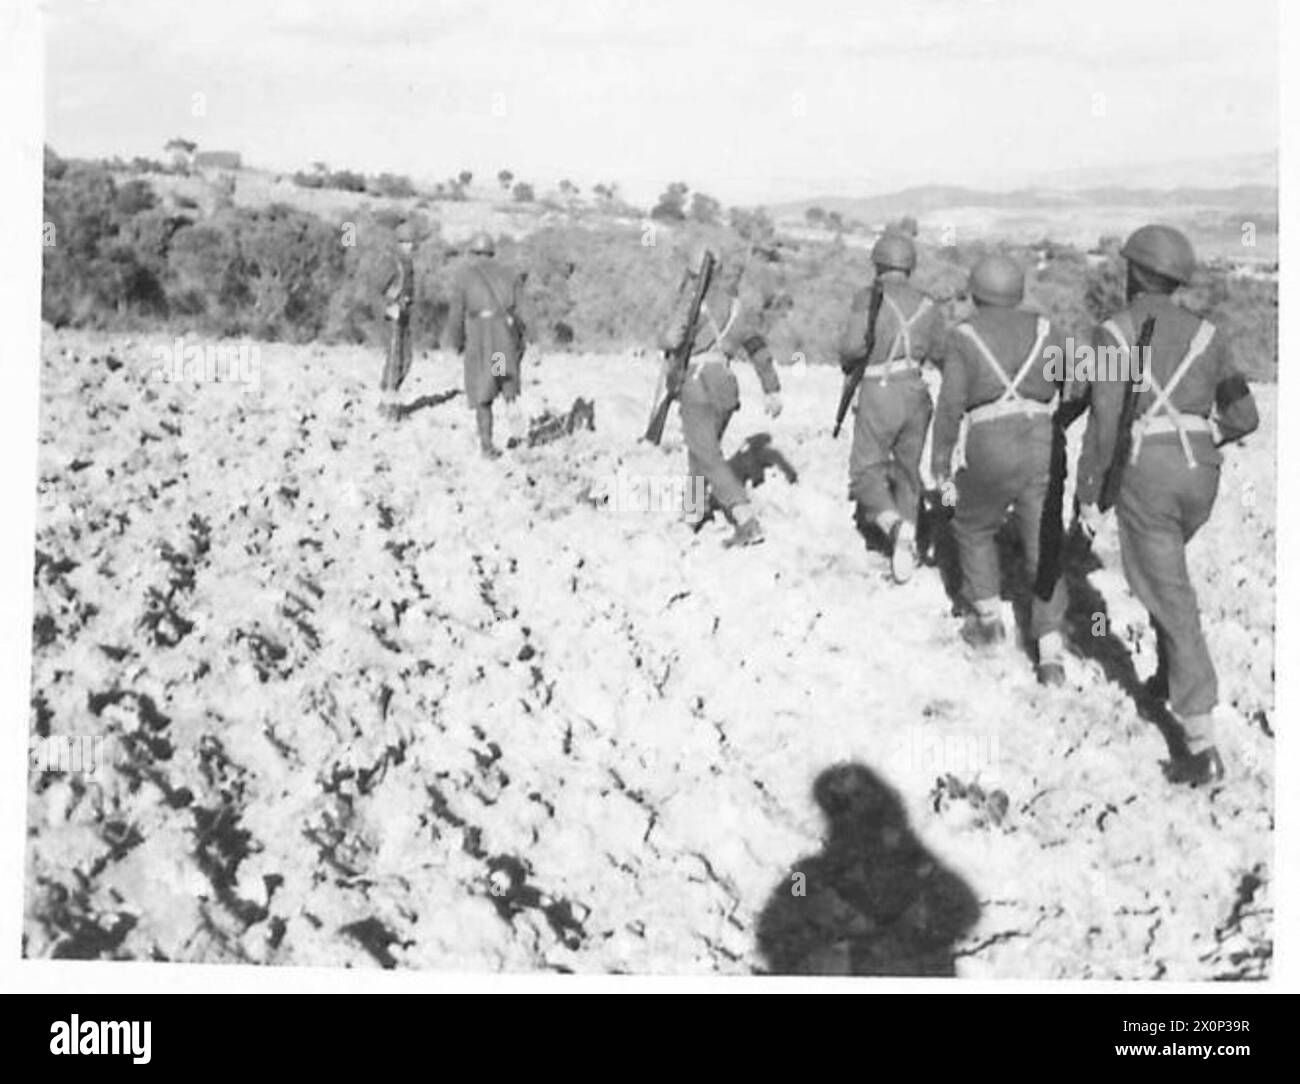 L'ARMÉE BRITANNIQUE DANS LA CAMPAGNE DE TUNISIE, NOVEMBRE 1942-MAI 1943 - la patrouille retourne à leur base après le raid. Deux sous-sections d'une compagnie de prévôt divisionnaire dirigée par le major Price APM et assistée d'un officier français et de deux policiers militaires français sont allés attaquer un village arabe situé dans la chaîne de montagnes qui sépare Teboursouk d'El Aroussa alors que des traînards allemands et italiens étaient soupçonnés de s'y cacher. Après avoir entouré l'endroit et fouillé chaque gobi (hutte) soigneusement les résultats étaient nuls, à l'exception d'un fusil français. Deux civils arabes ont été ramenés au QG pour Banque D'Images